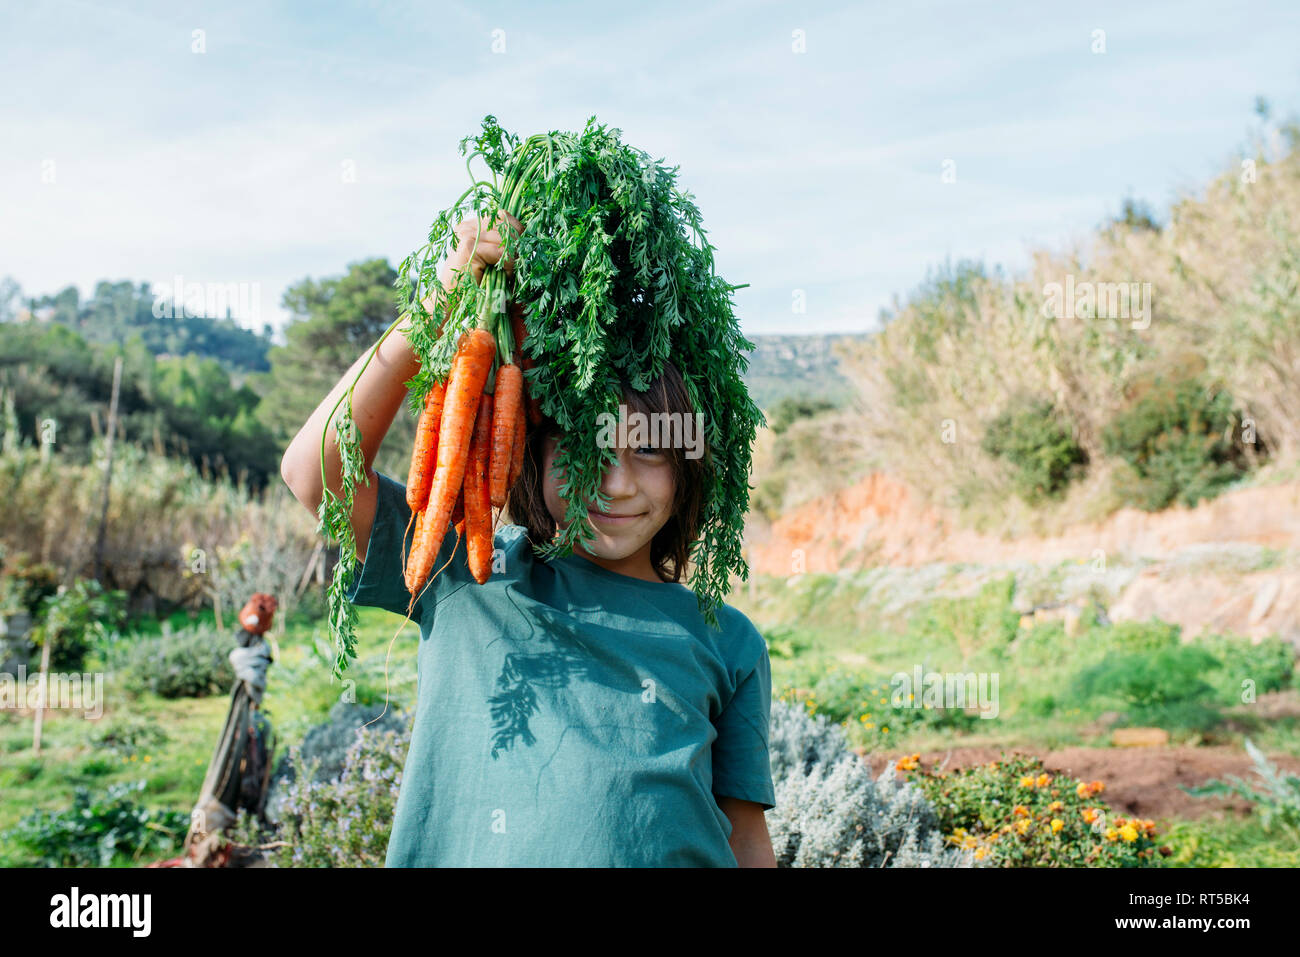 Junge im Gemüsegarten, halten ein paar Karotten Stockfoto